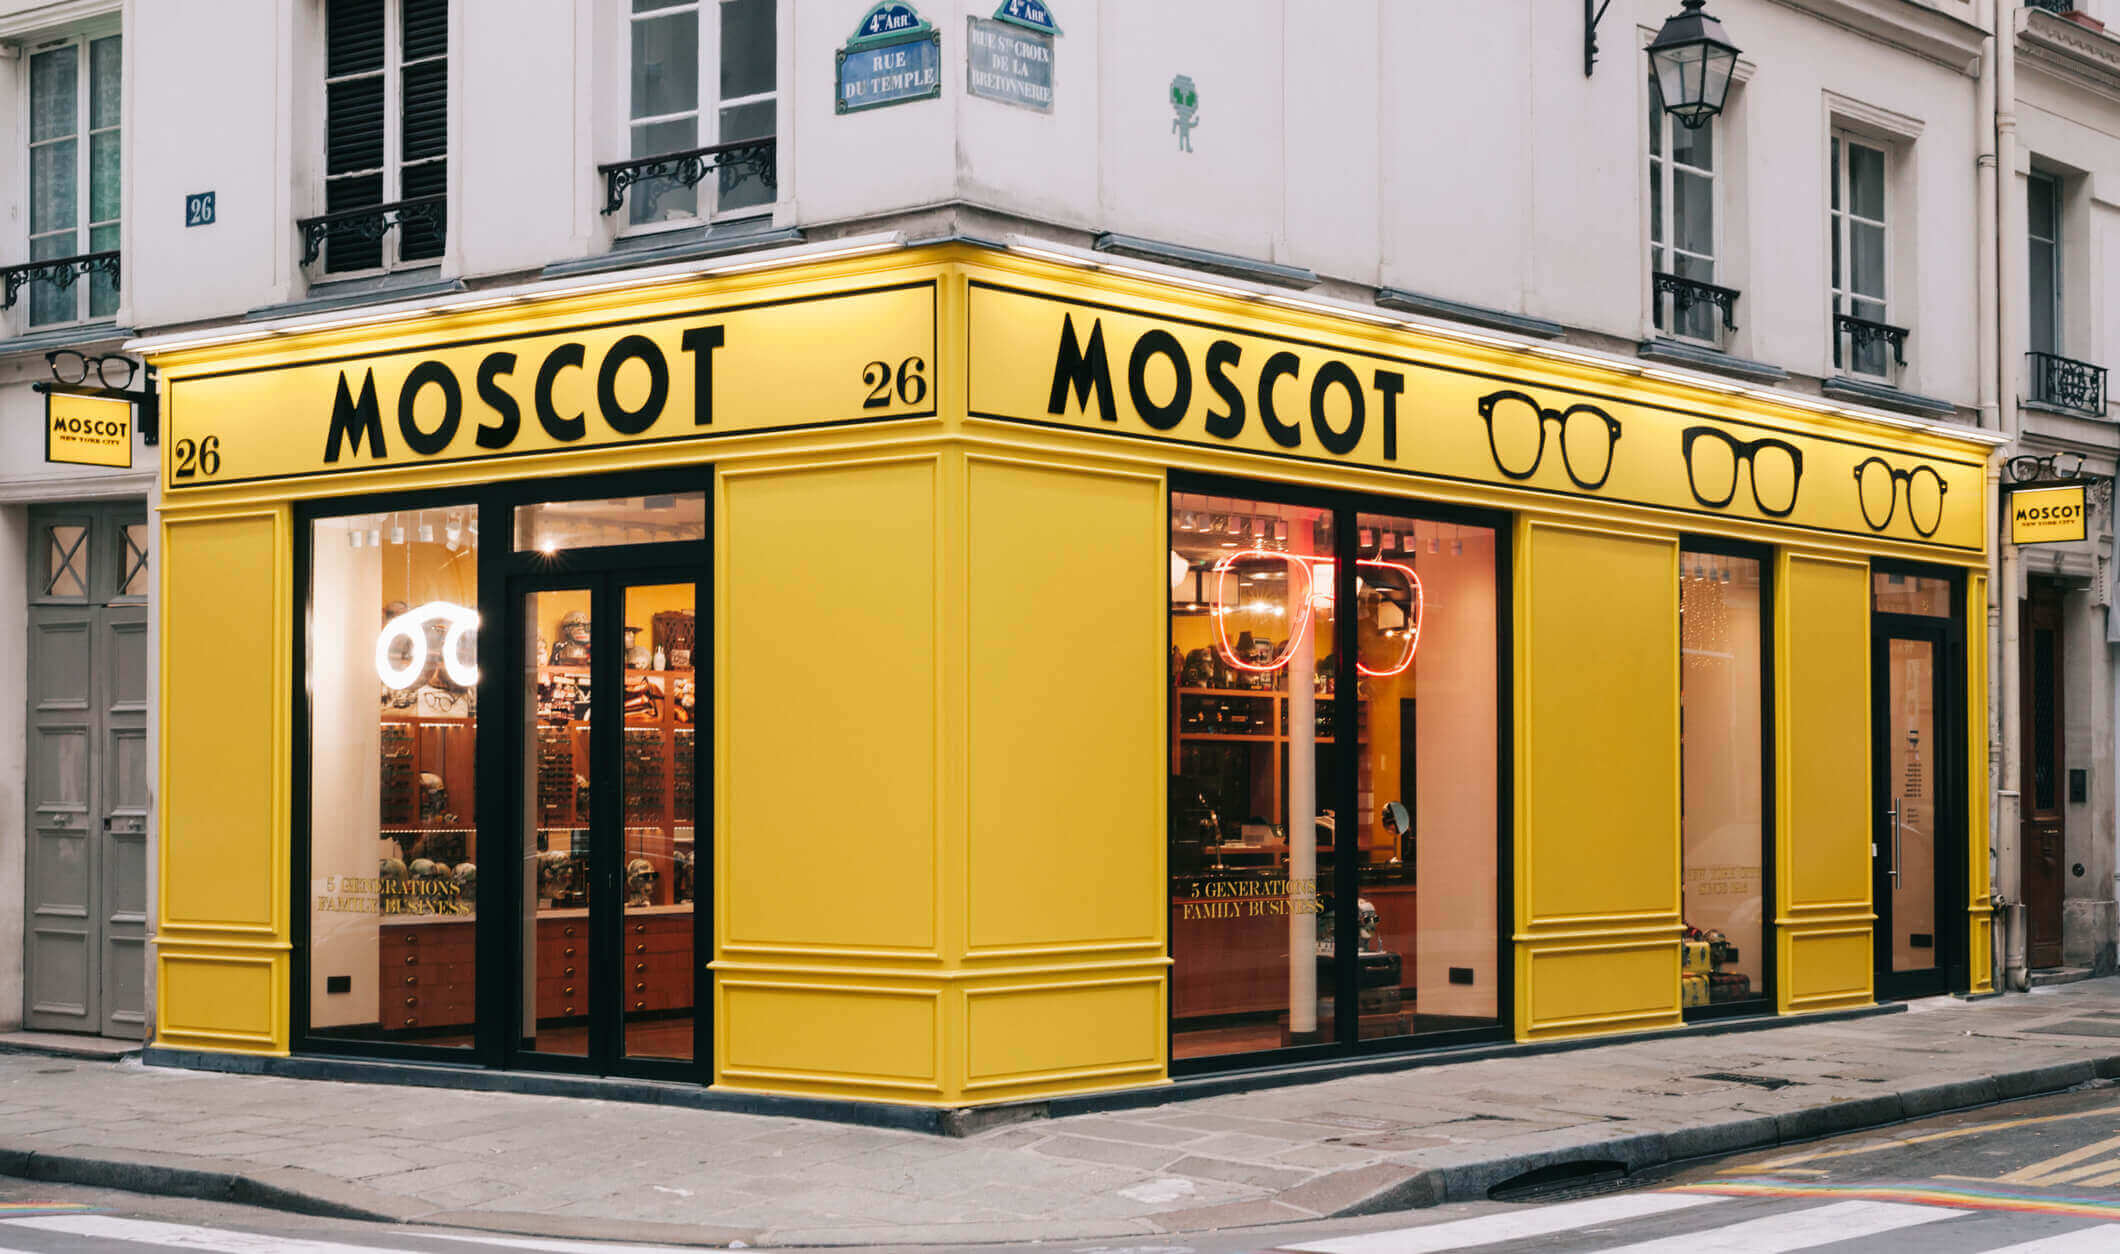 The MOSCOT Le Marais Shop exterior